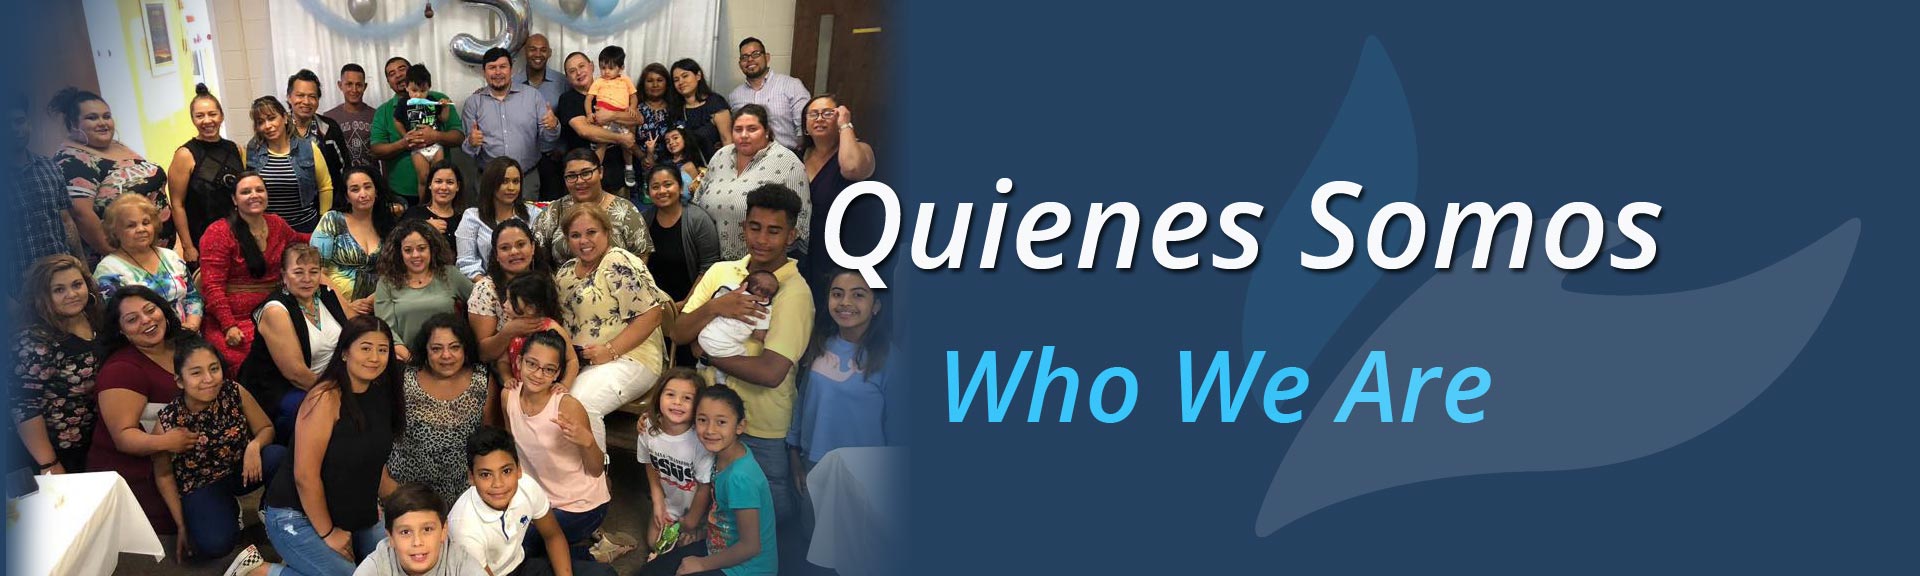 Quienes Somos - Who We Are- Avivamiento Latino Church, Durham NC